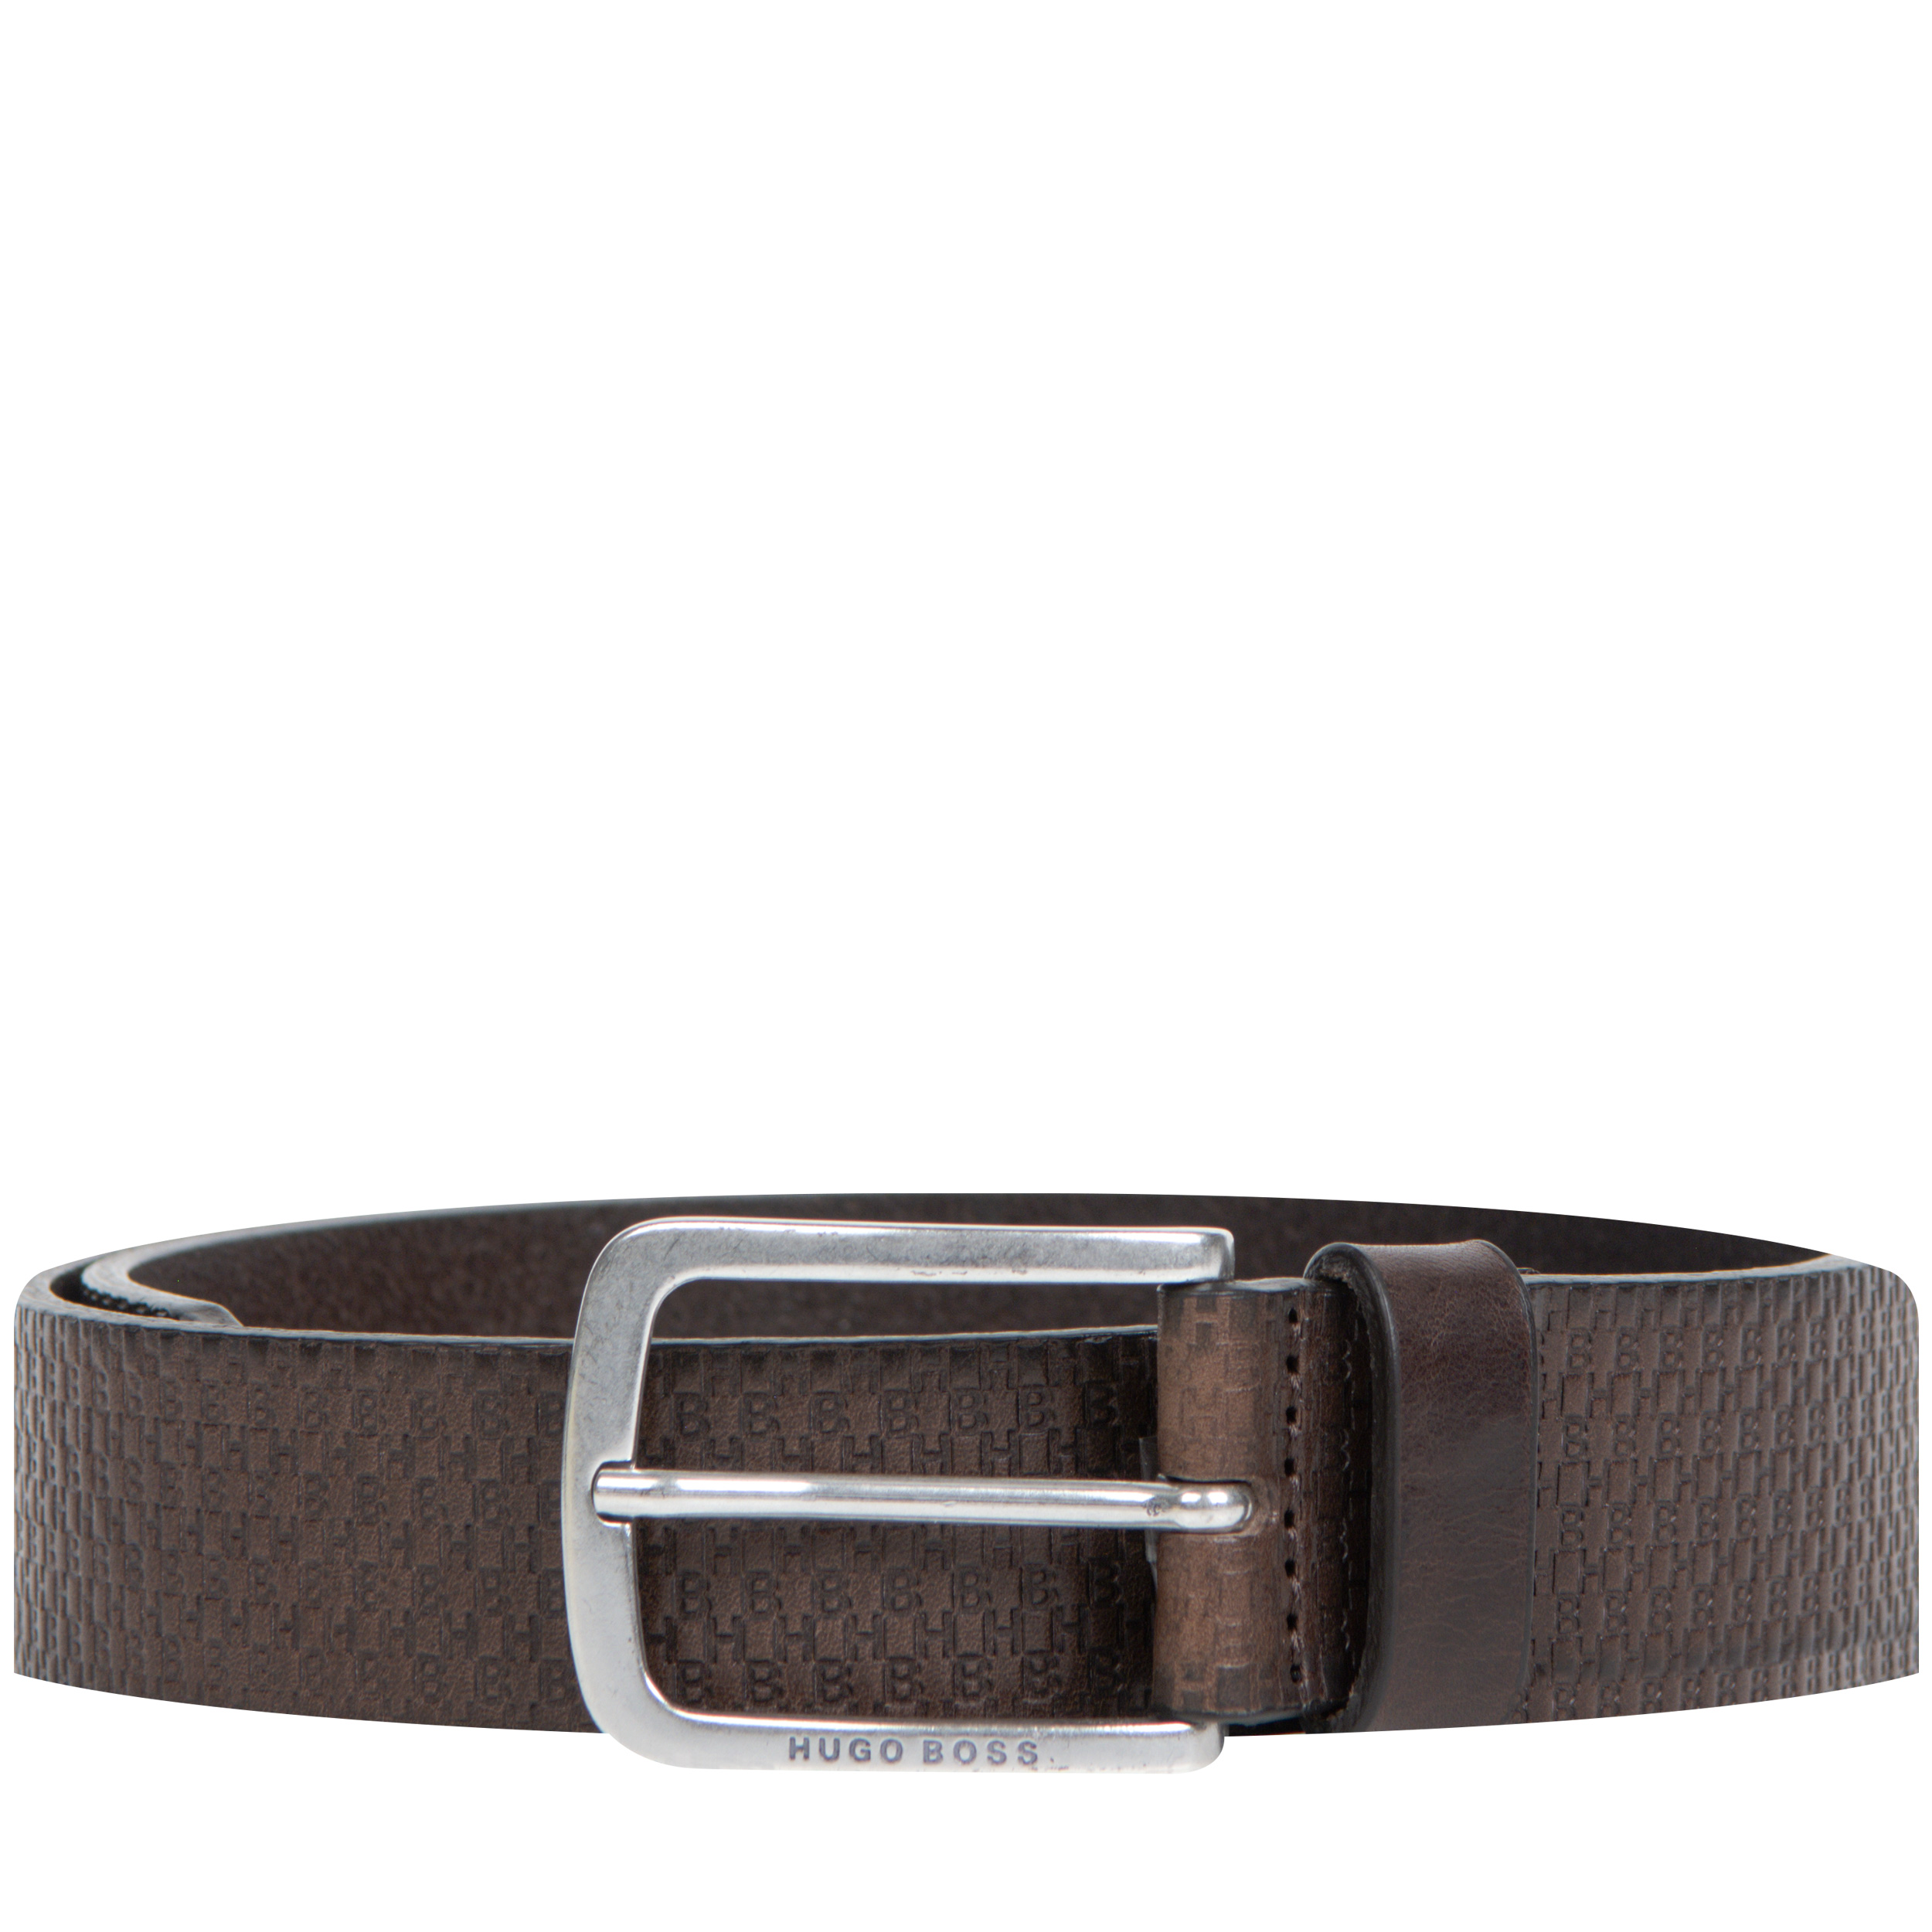 ’Jor HB’ Embossed Leather Belt Dark Brown